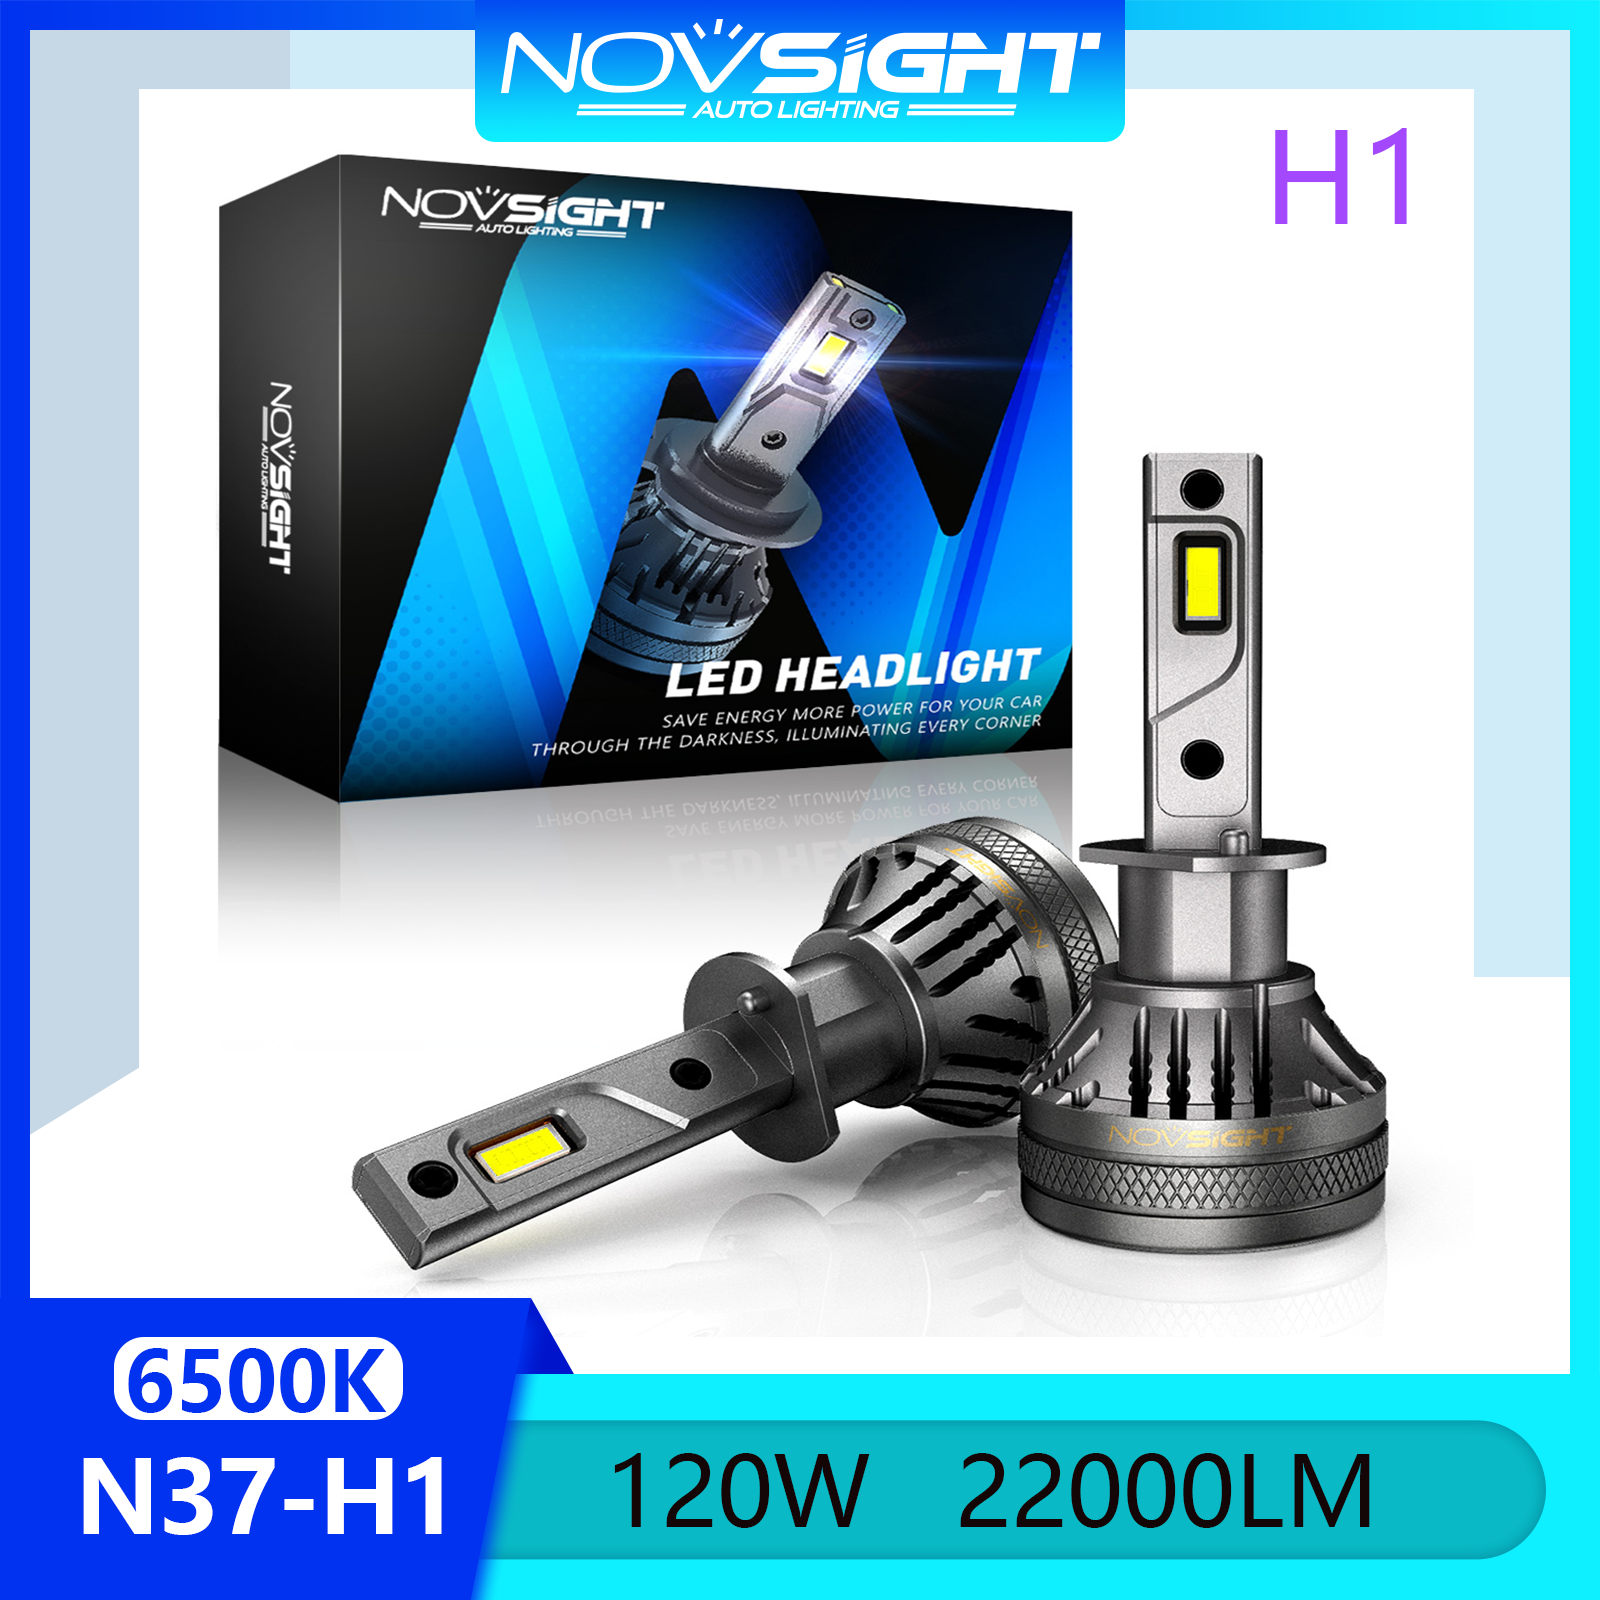 Novsight N37 6500K Đèn LED siêu sáng dành cho ô tô H1 Đèn pha LED Bộ bóng đèn pha Đèn sương mù Chùm sáng cao / thấp 120W 22000LM Cắm và chạy Có sẵn 1 cặp 2 miếng Bảo hành 2 năm Miễn phí vận chuyển